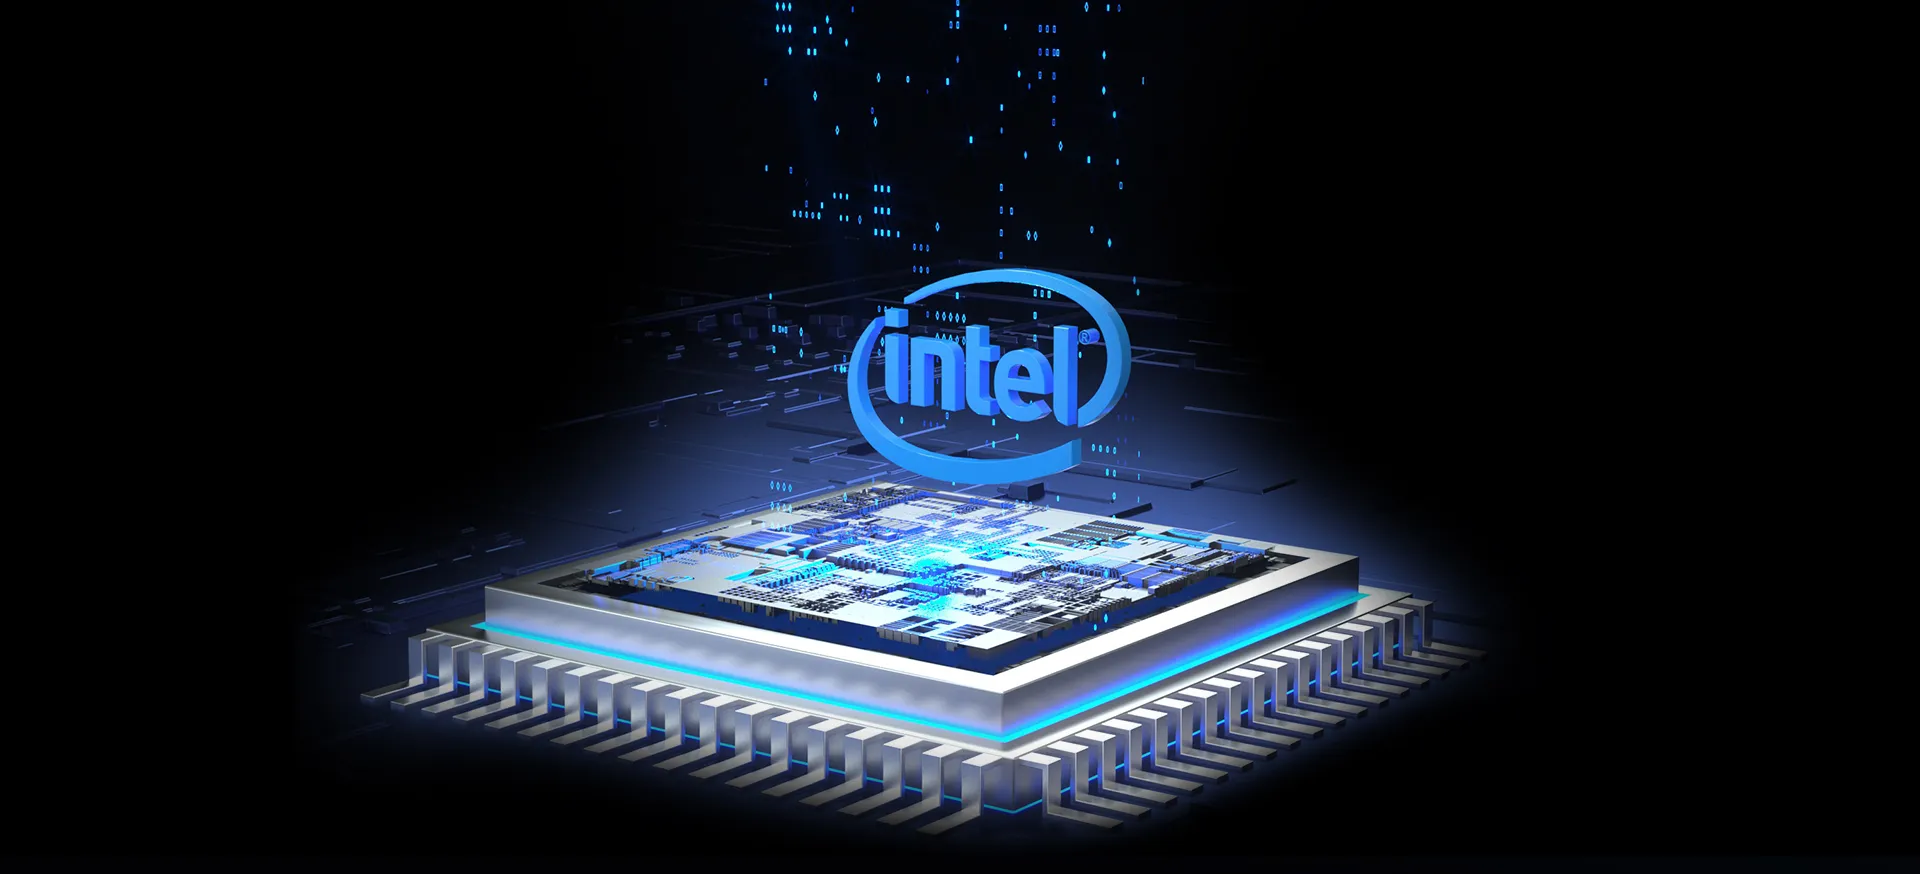 GEEKOM Mini IT11 with Intel CPU